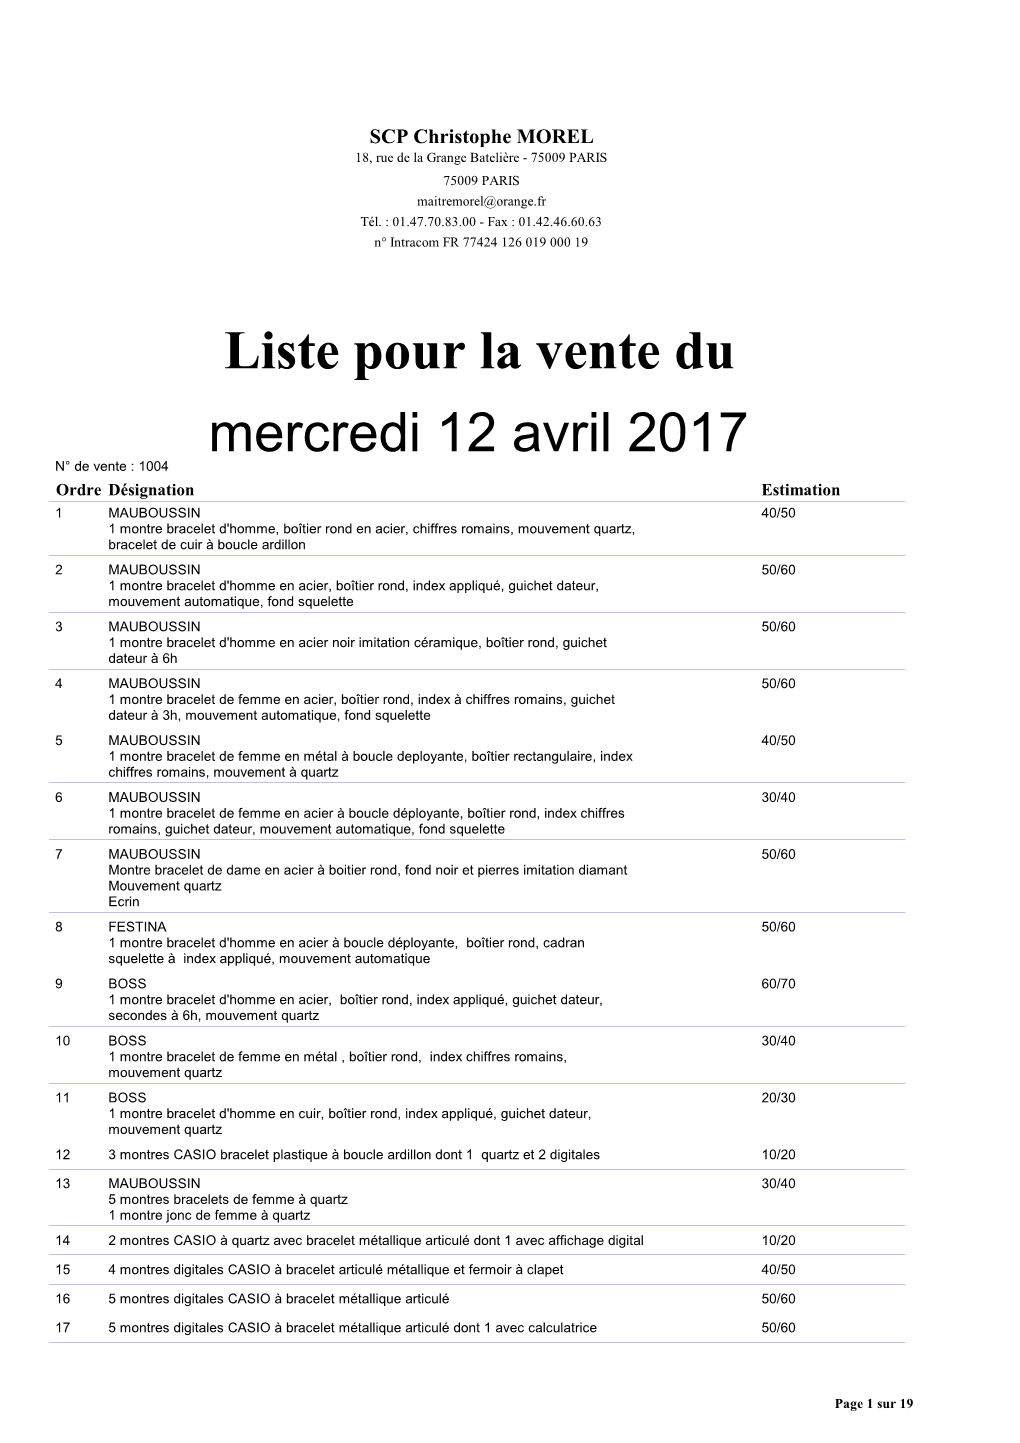 Liste Pour La Vente Du Mercredi 12 Avril 2017